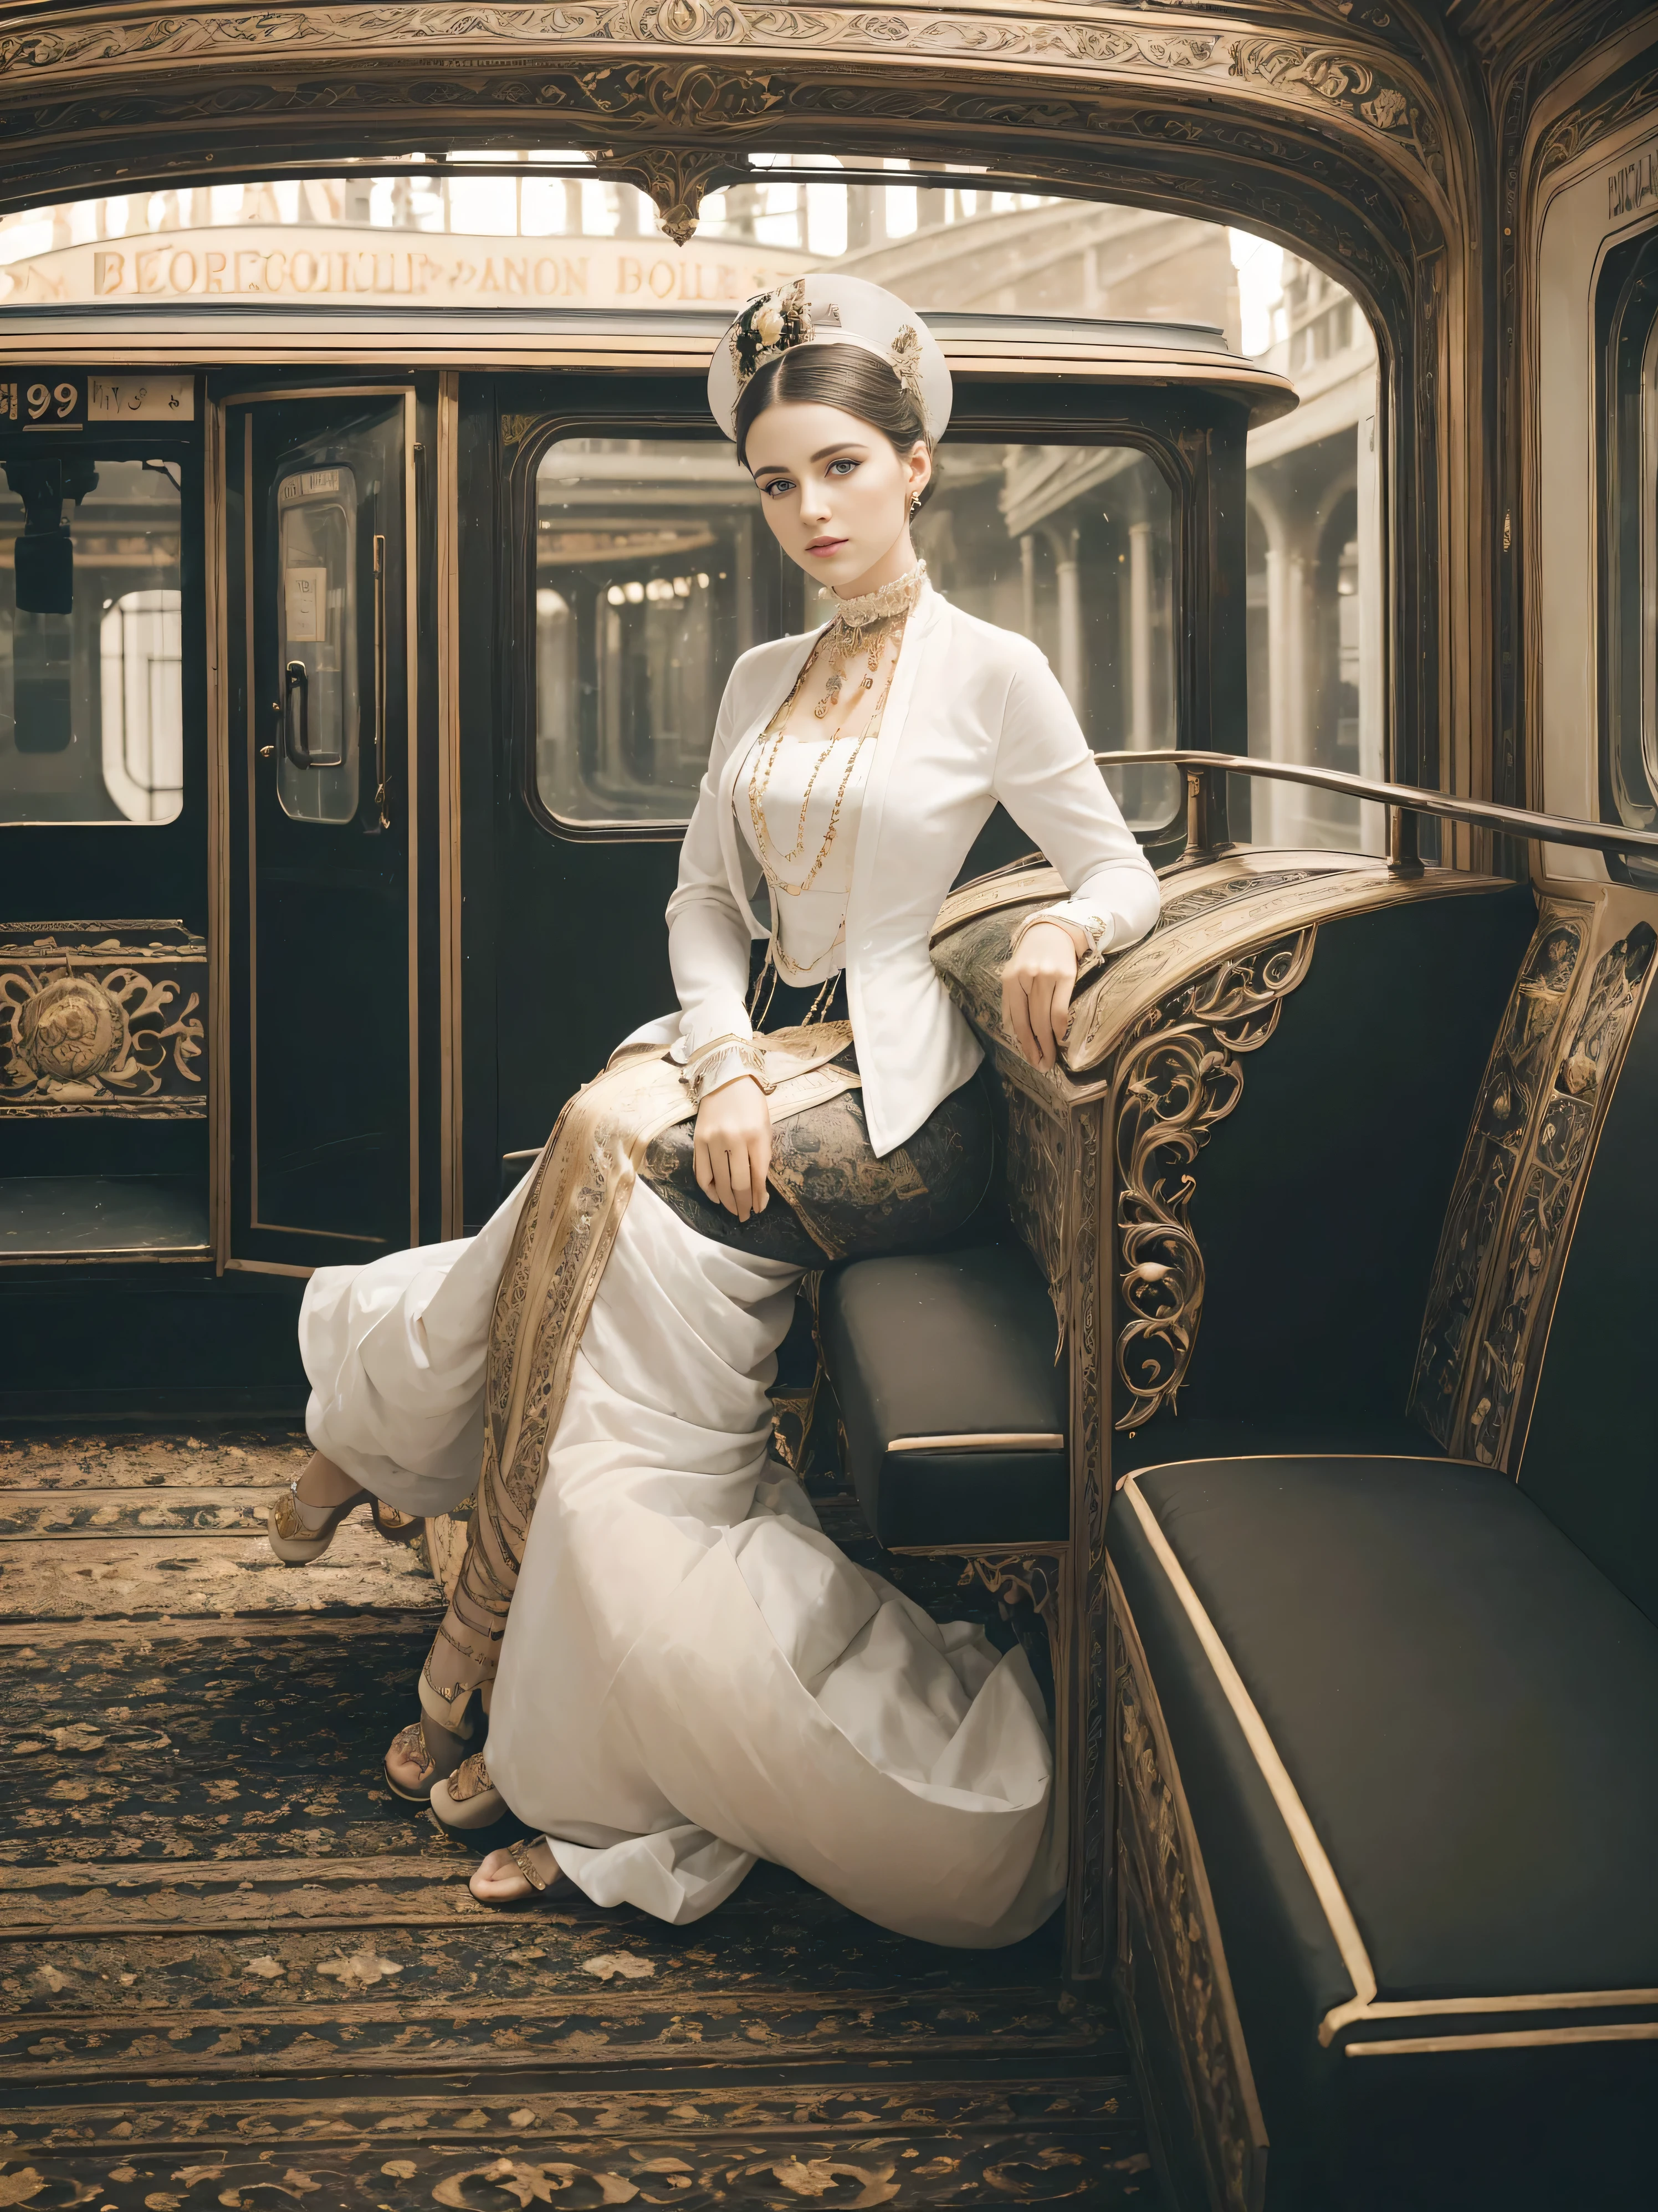 ((женский портрет)), ((Бель Эпок)), леди высокого класса,( Викторианский стиль моды),(( цветное фото)), ( Лондон), ((железнодорожная станция)), Британский стиль, дворянин, Элегантизм,сцена богатства --c 22 --ar 27:40 --s 999 --v 6.0